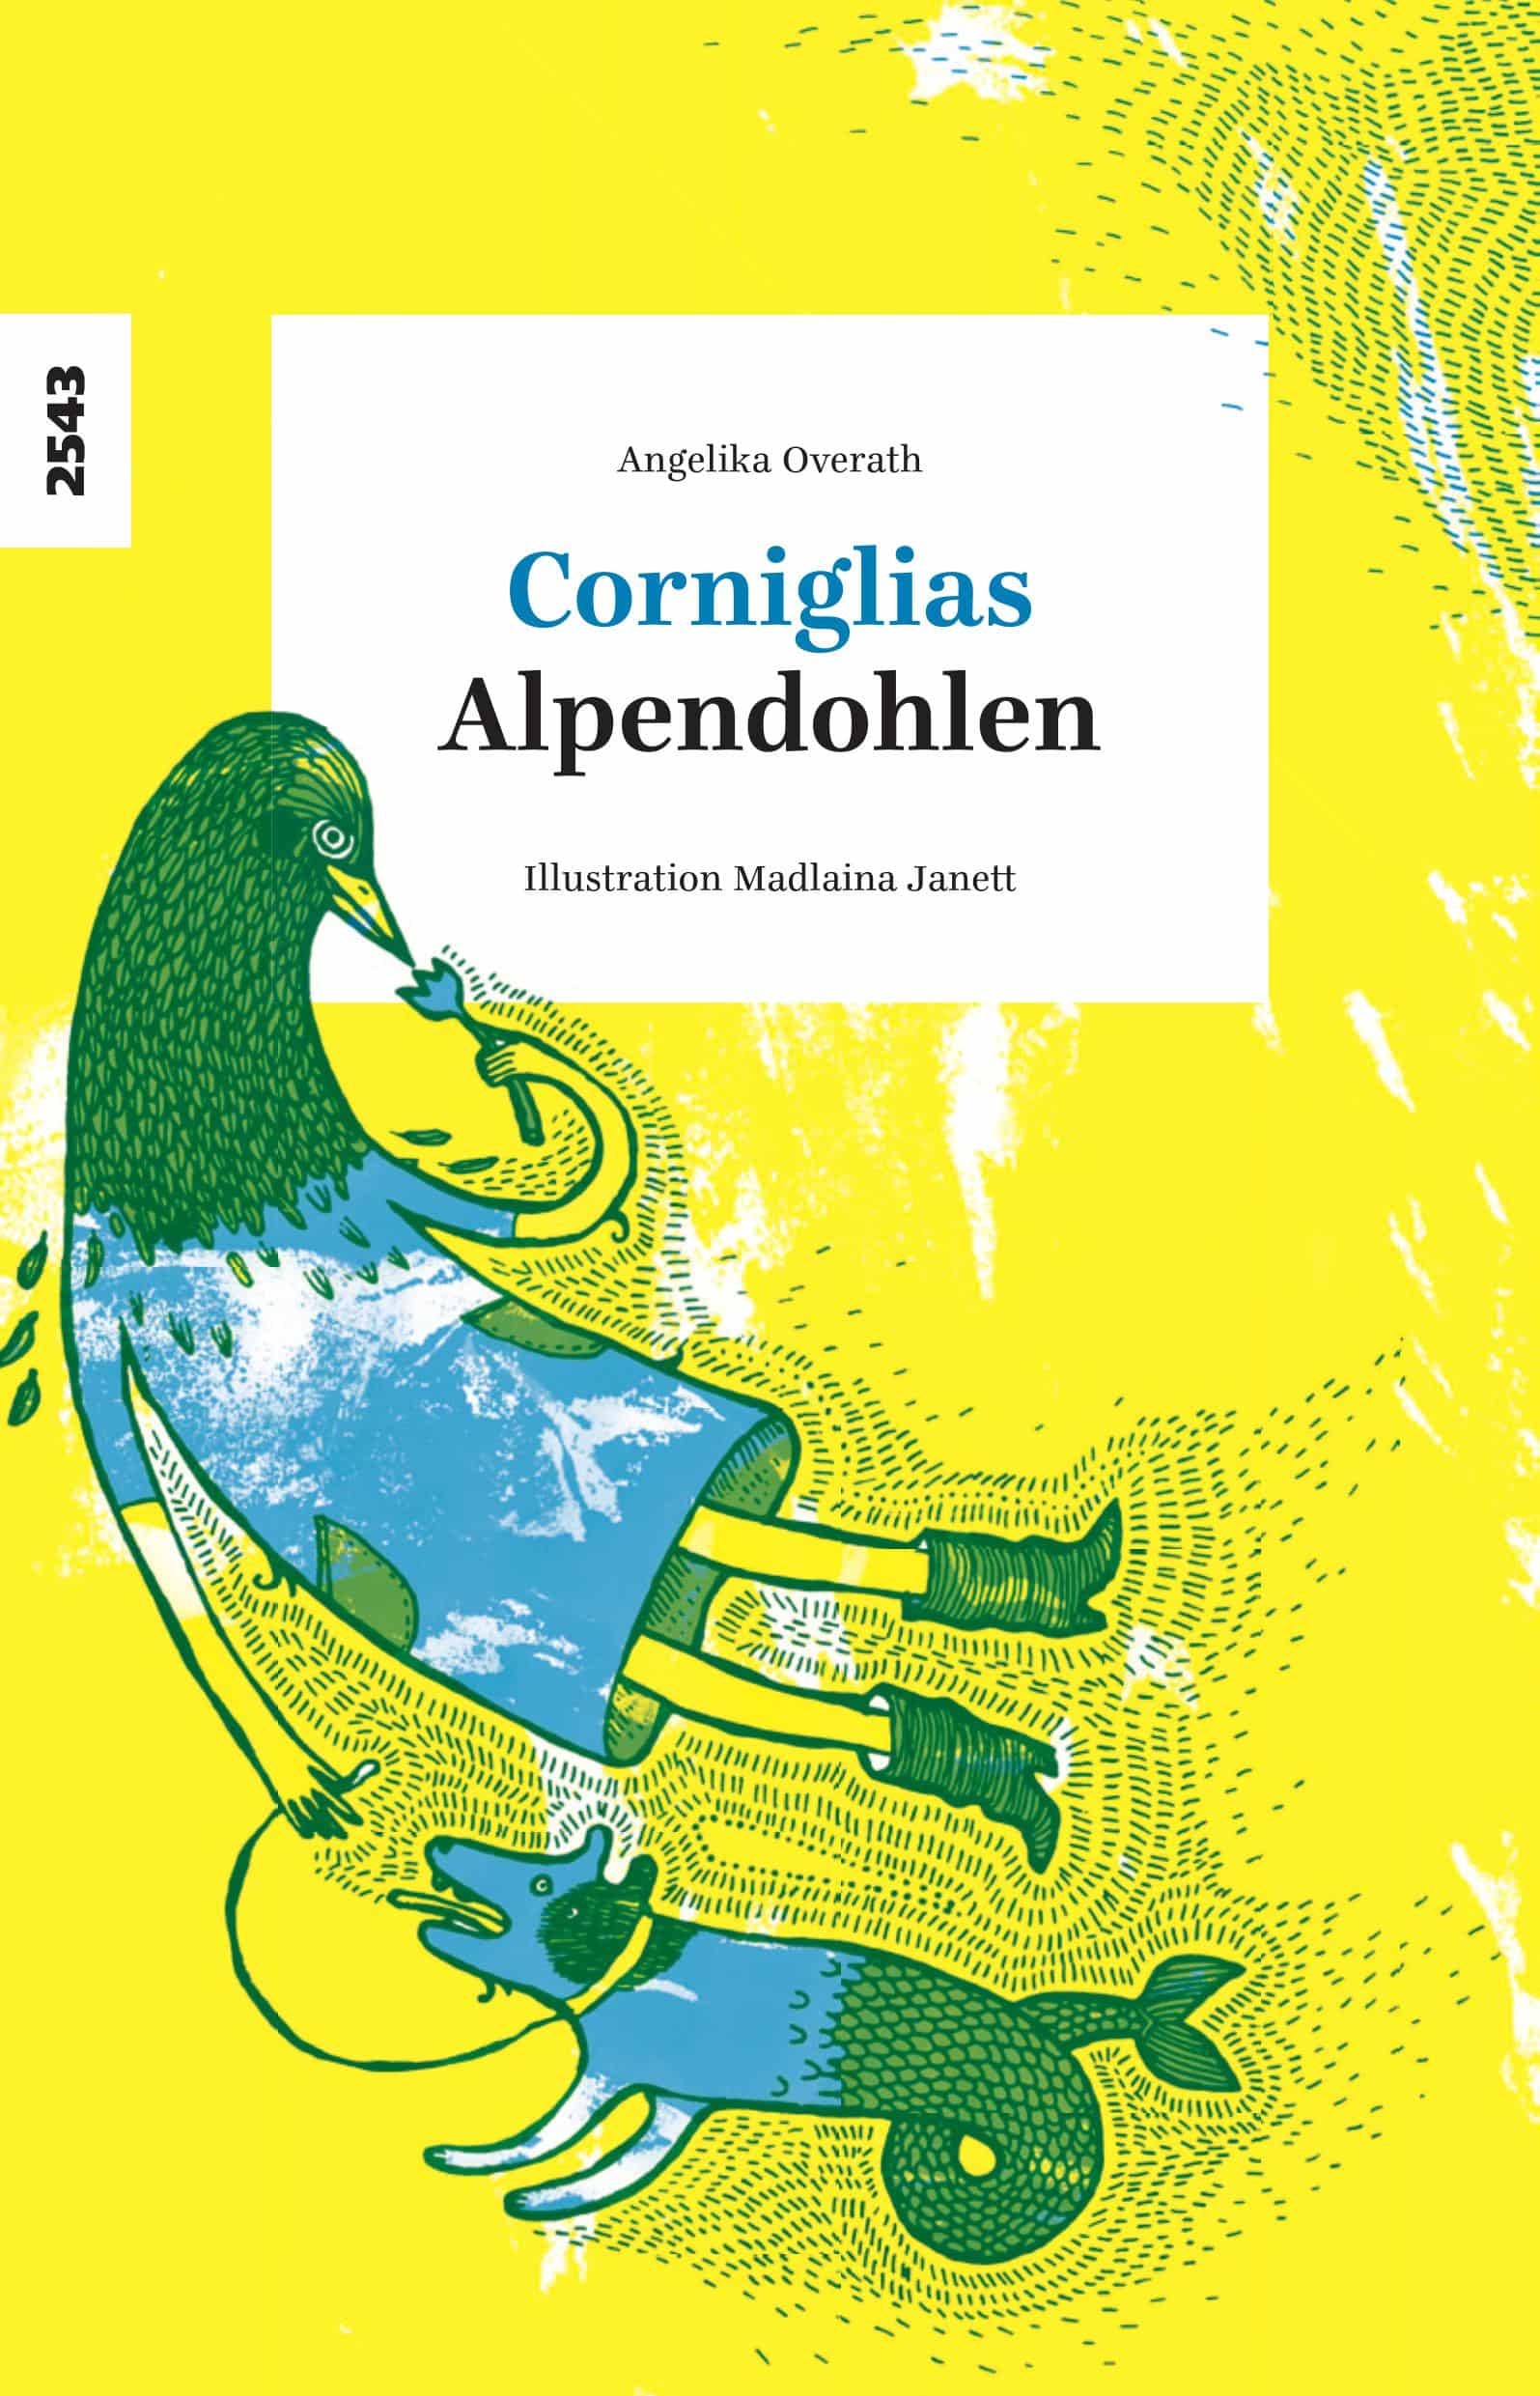 Corniglias / Alpendohlen, ein zweisprachiger Gedichtband von Angelika Overath, Illustration von Madlaina Janett, SJW Verlag